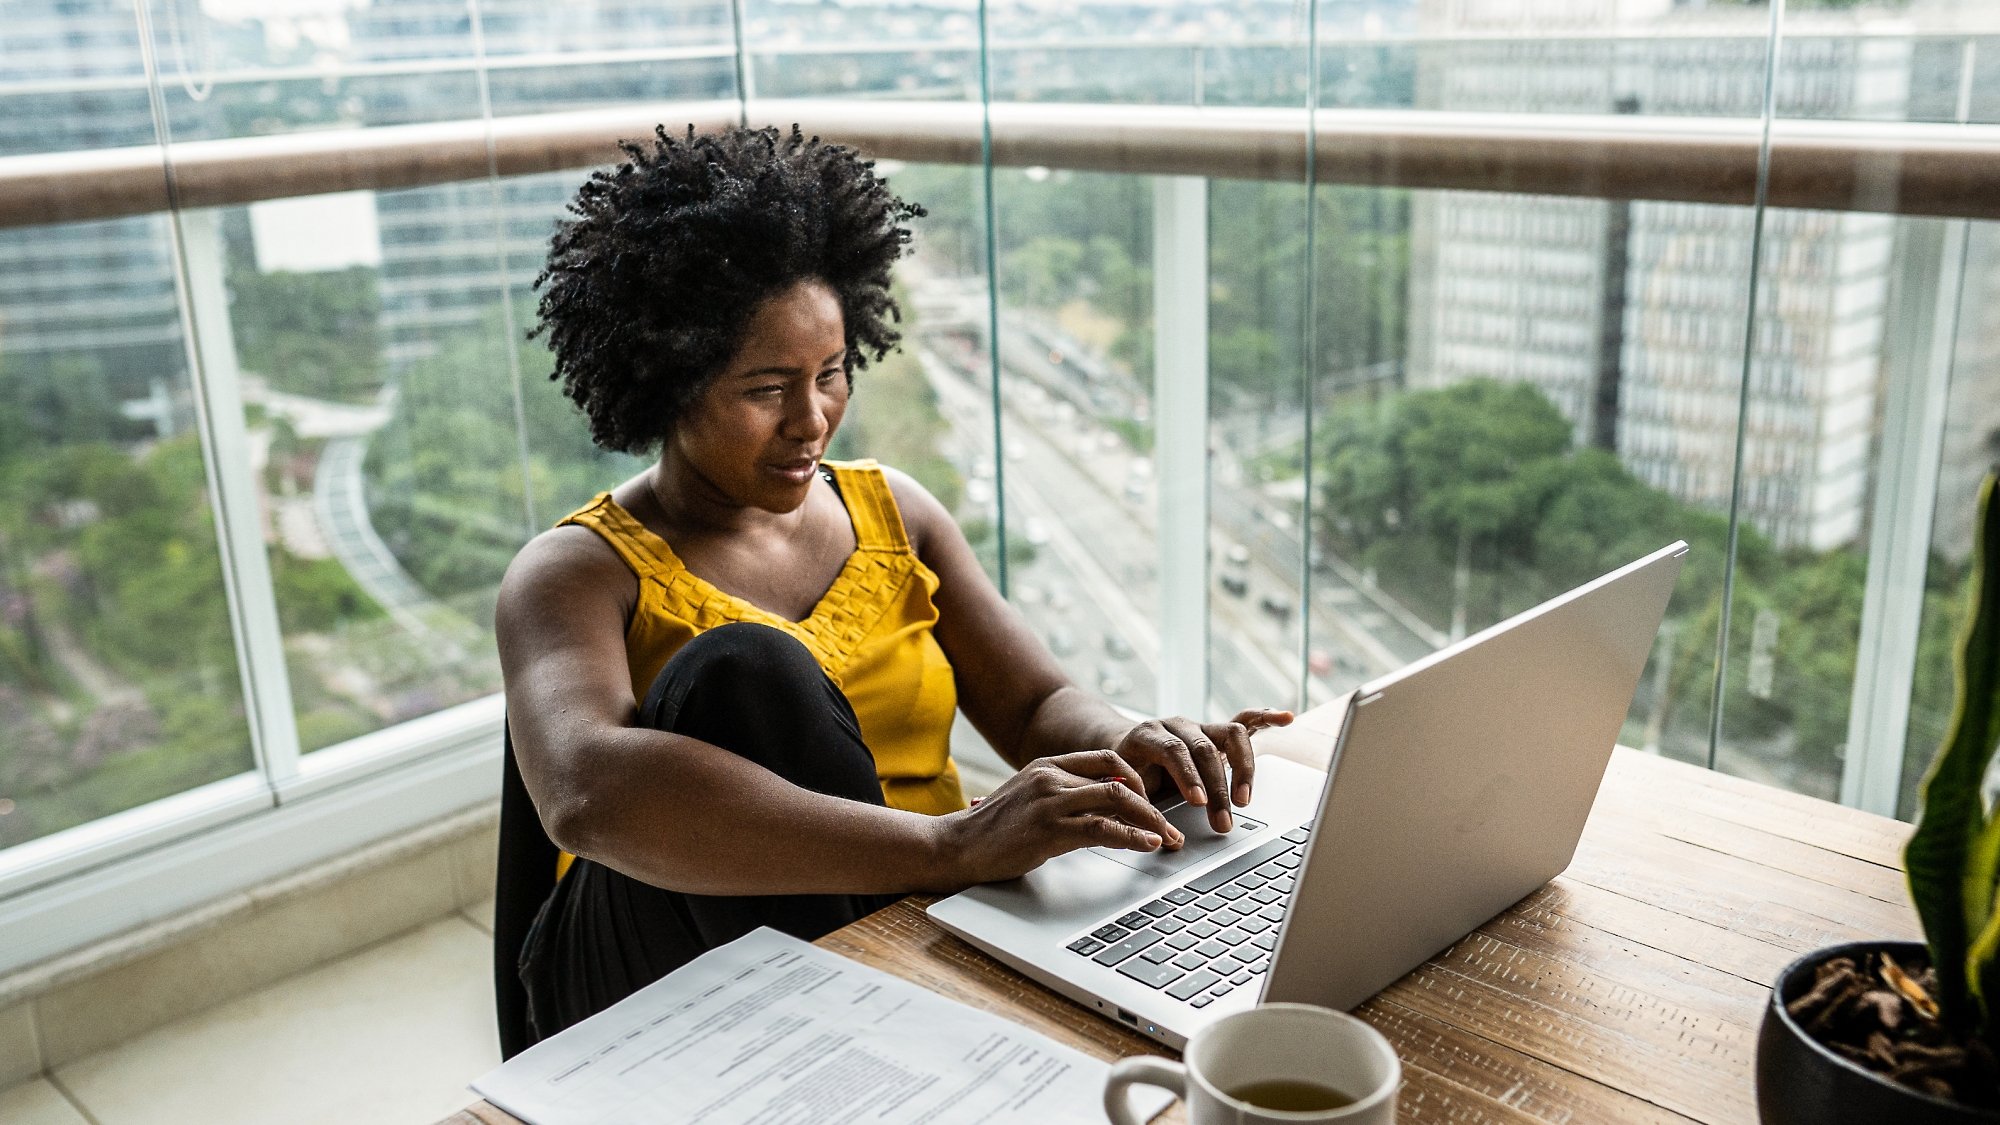 Een vrouw werkt op een laptop aan een bureau bij een raam met uitzicht op een stad. In de buurt zijn er documenten en een koffiekop te zien.